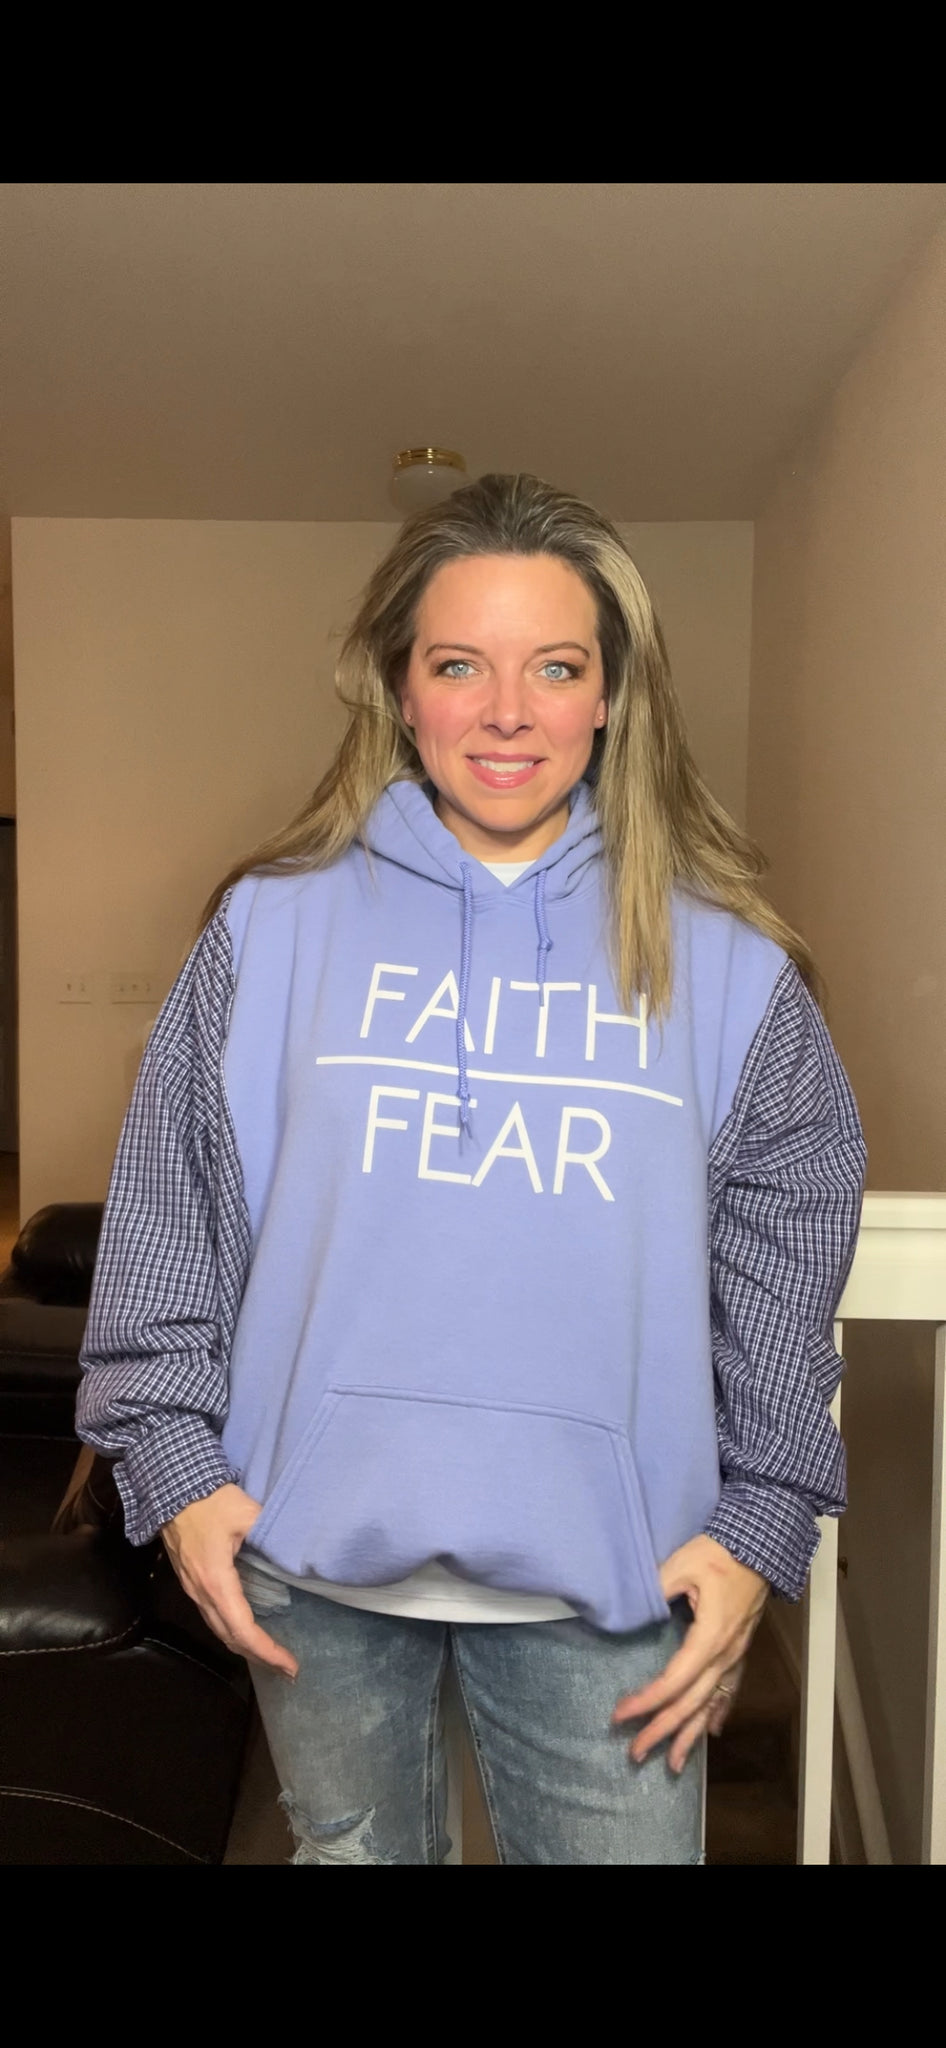 Faith Over Fear - woman’s XL